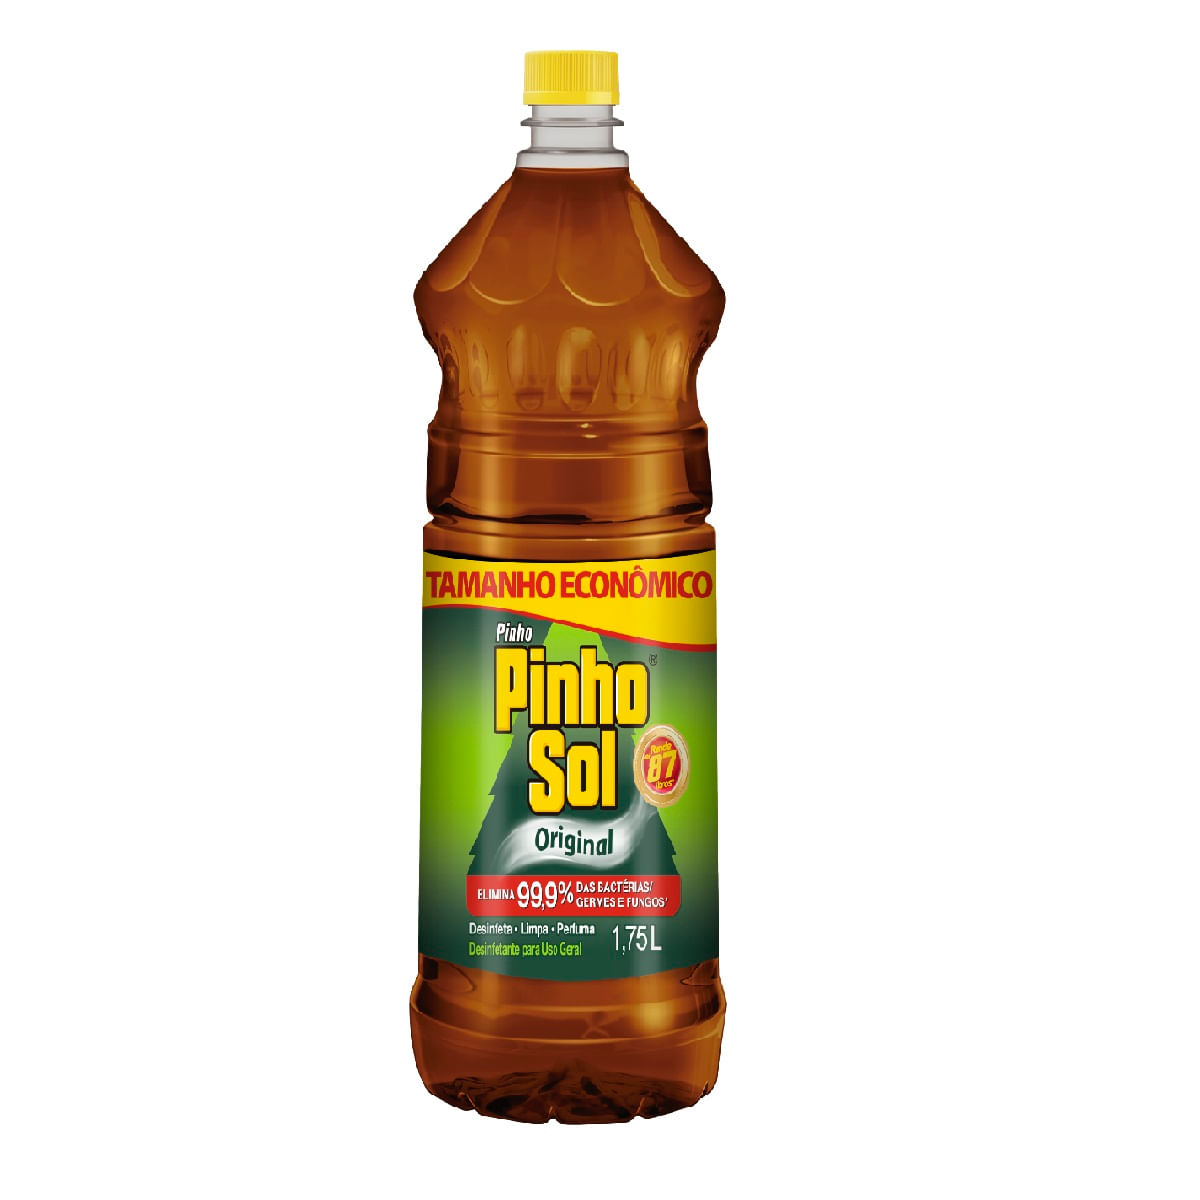 [LV 2 PG 1] Pinho Sol Original Desinfetante 1,75L